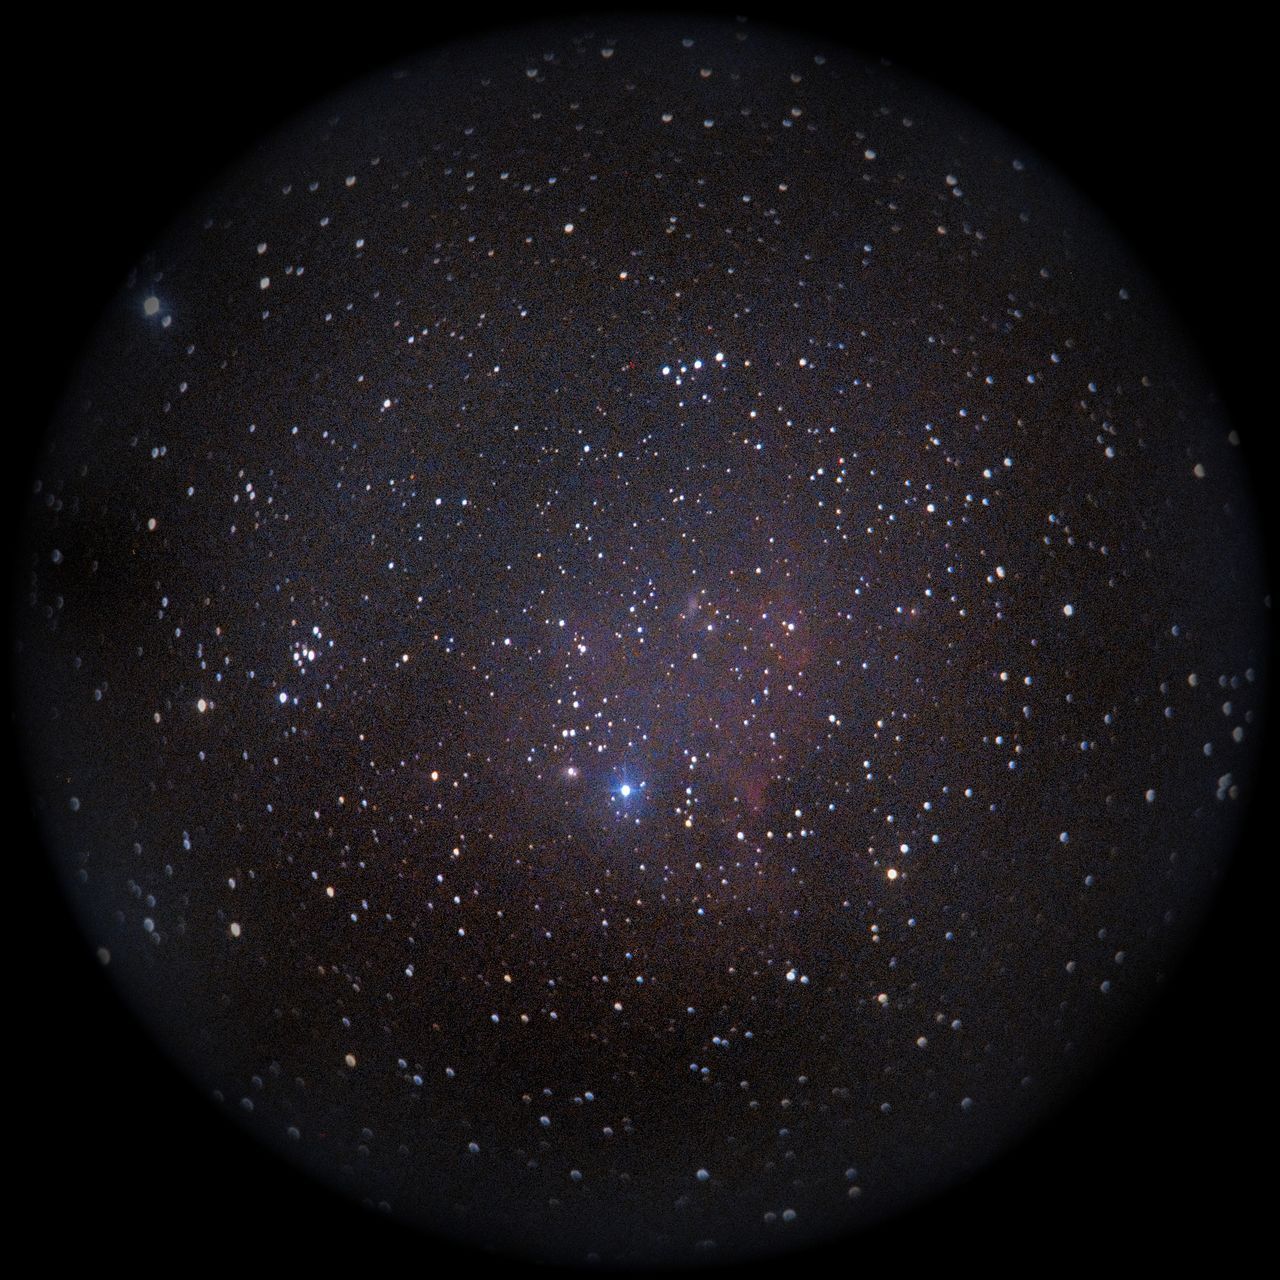 Image of NGC2174